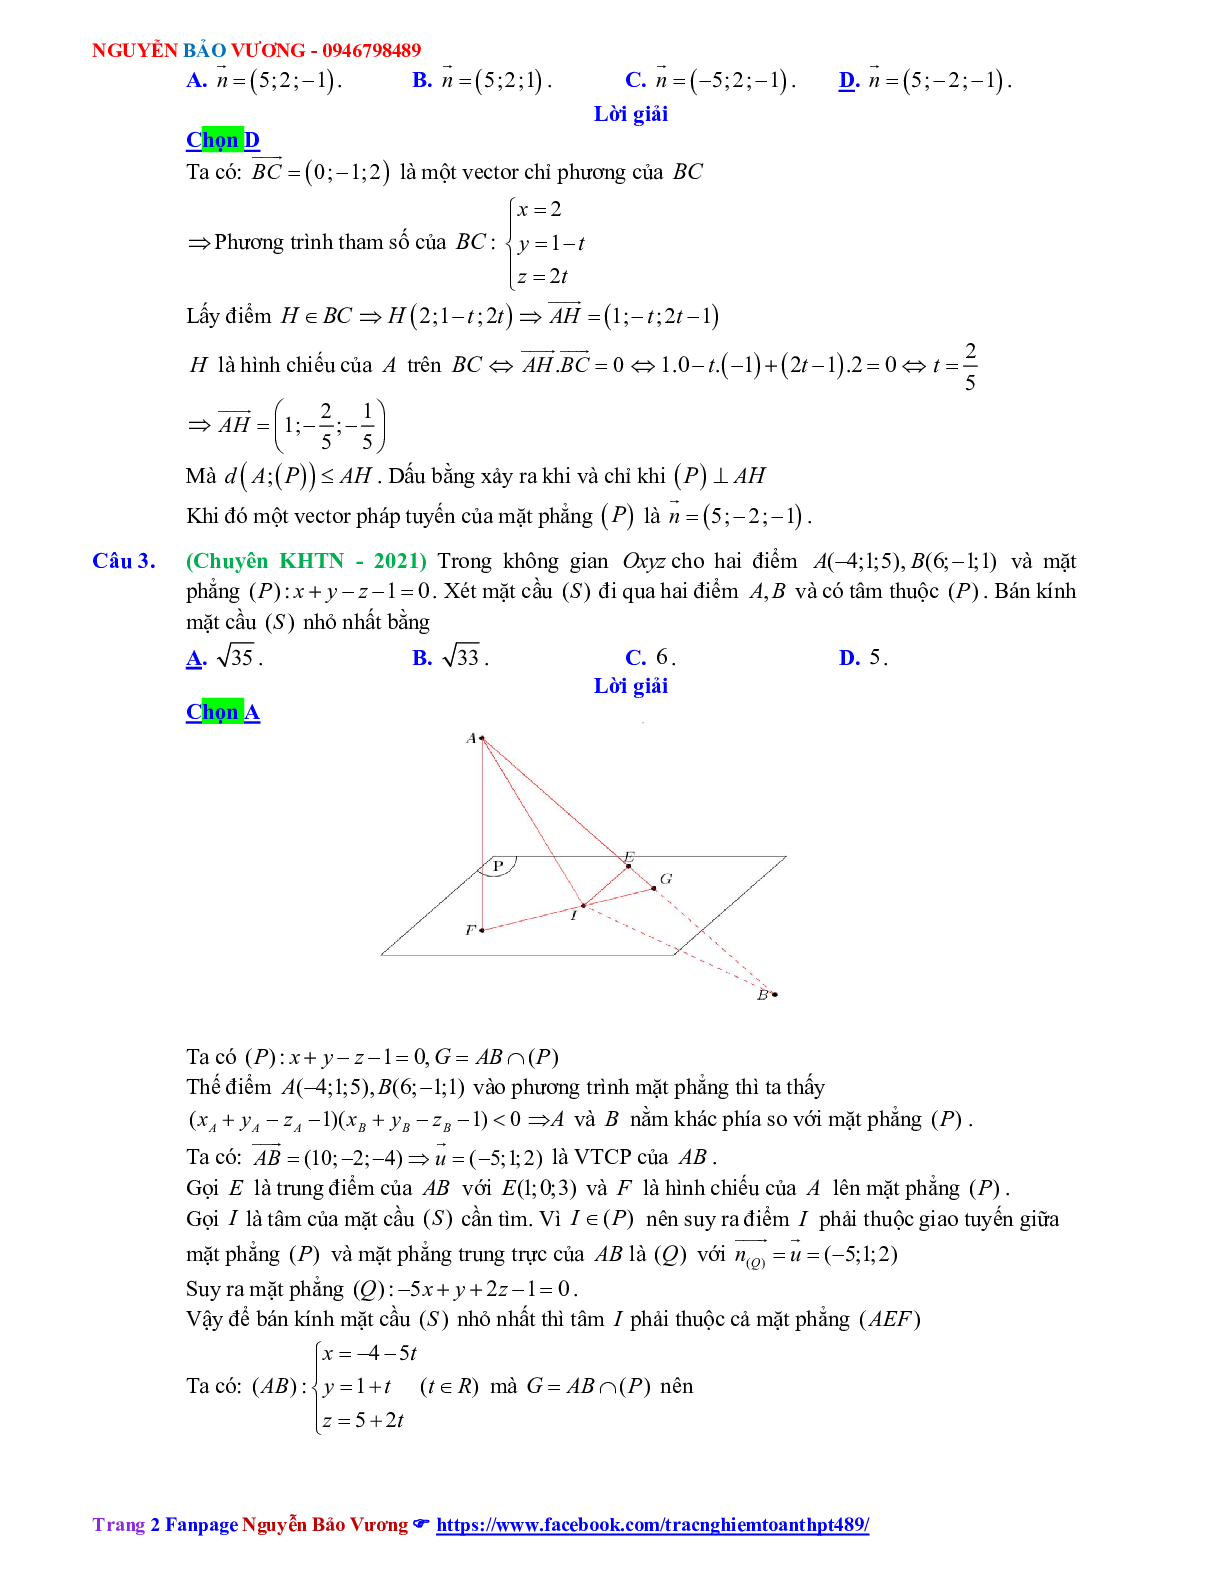 Trắc nghiệm Ôn thi THPT QG Toán 12: Đáp án phương pháp tọa độ trong không gian mức độ vận dụng cao (trang 2)